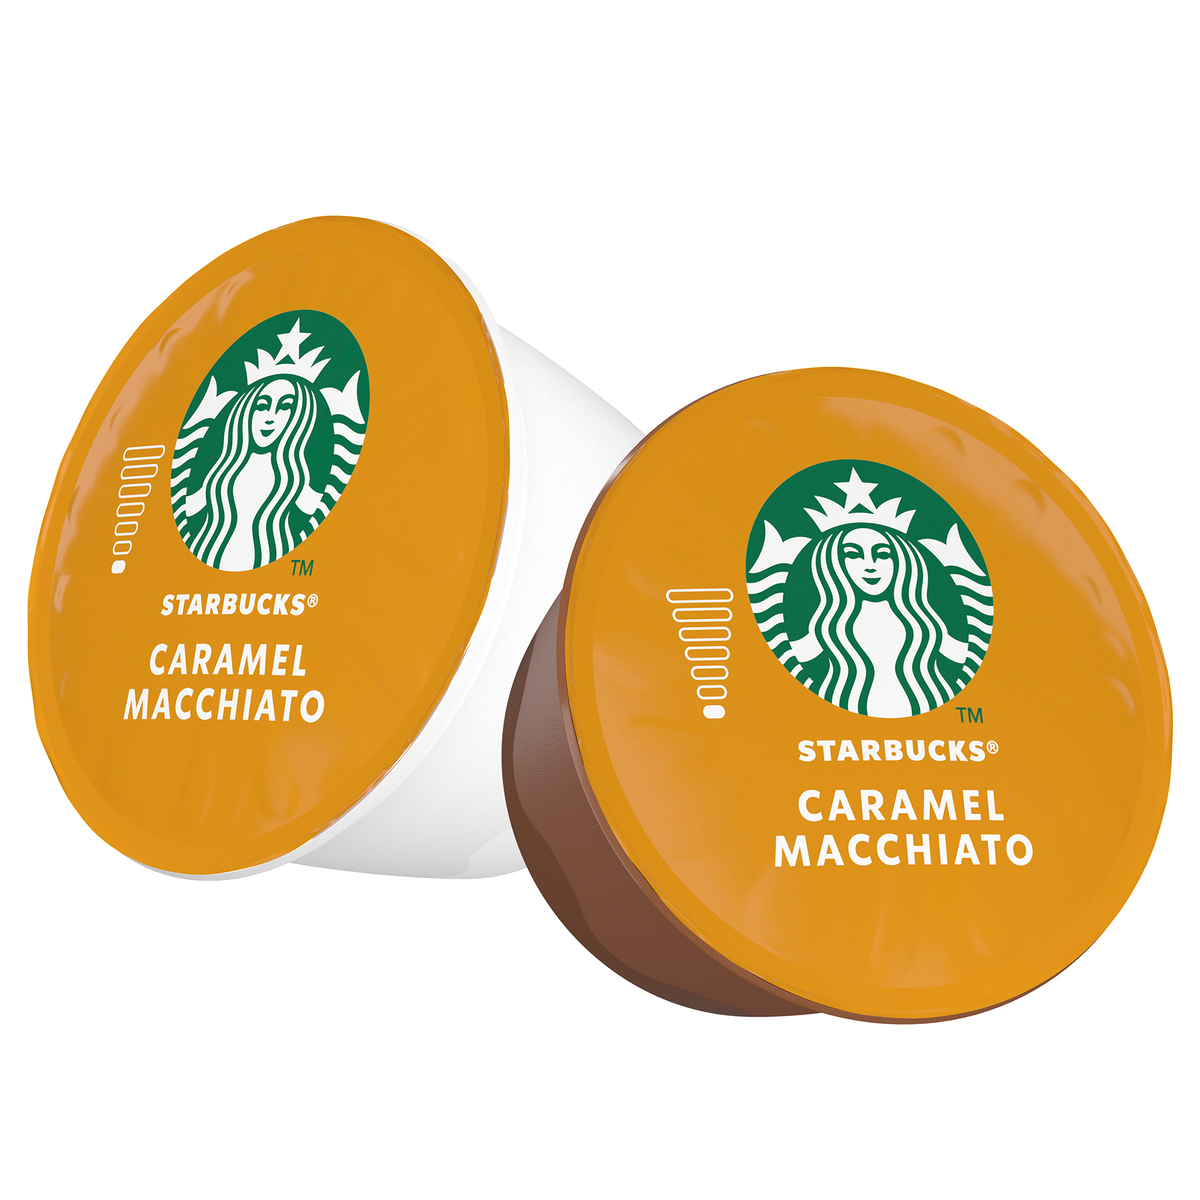 STARBUCKS CARAMEL MACCHIATO Dolce Gusto Compatible Coffee Capsules Pods Box